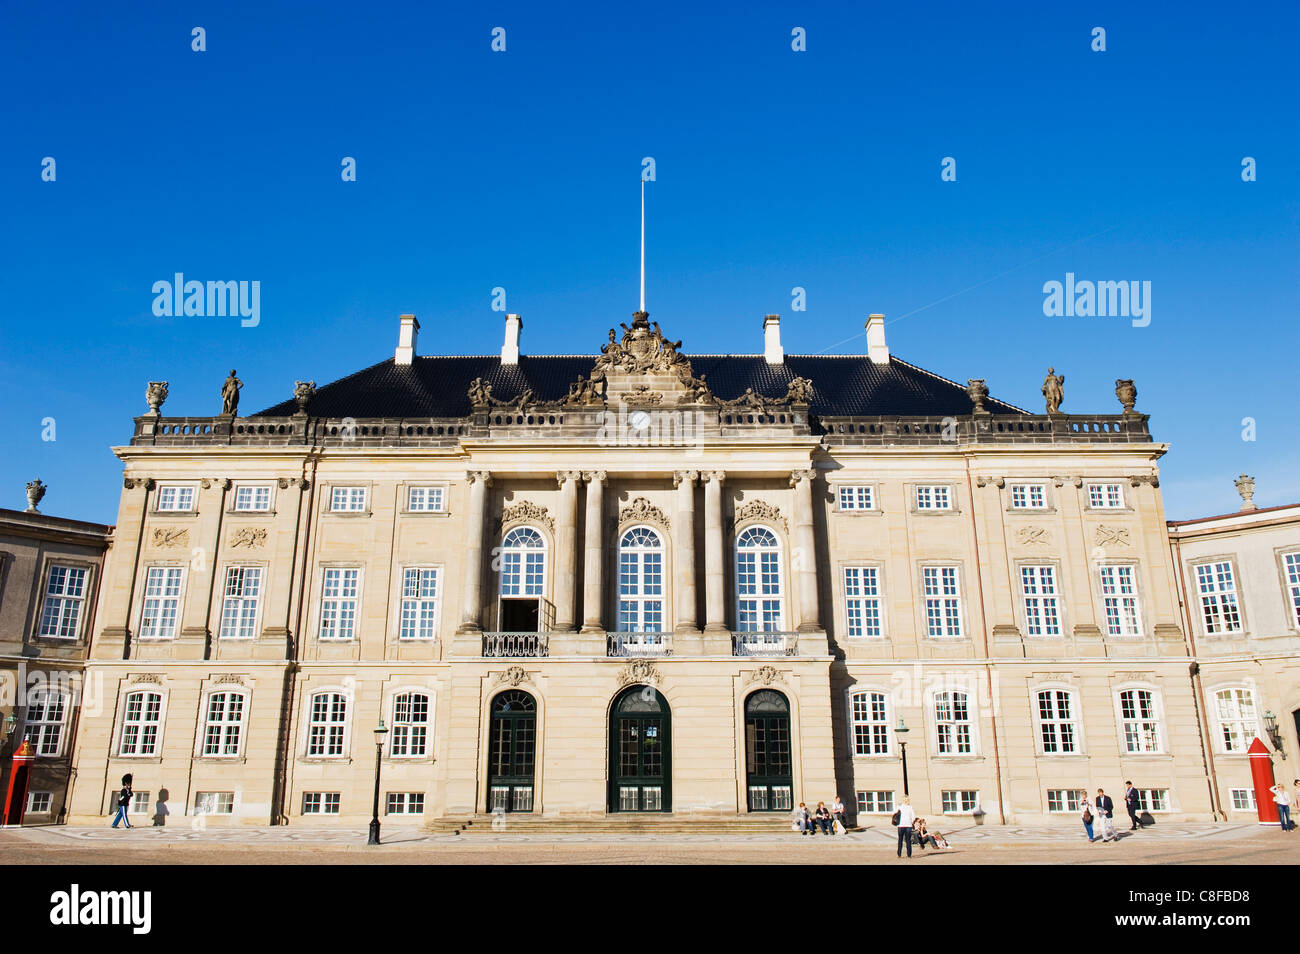 Amalienborg Palace, home of the royal family, Copenhagen, Denmark, Scandinavia Stock Photo